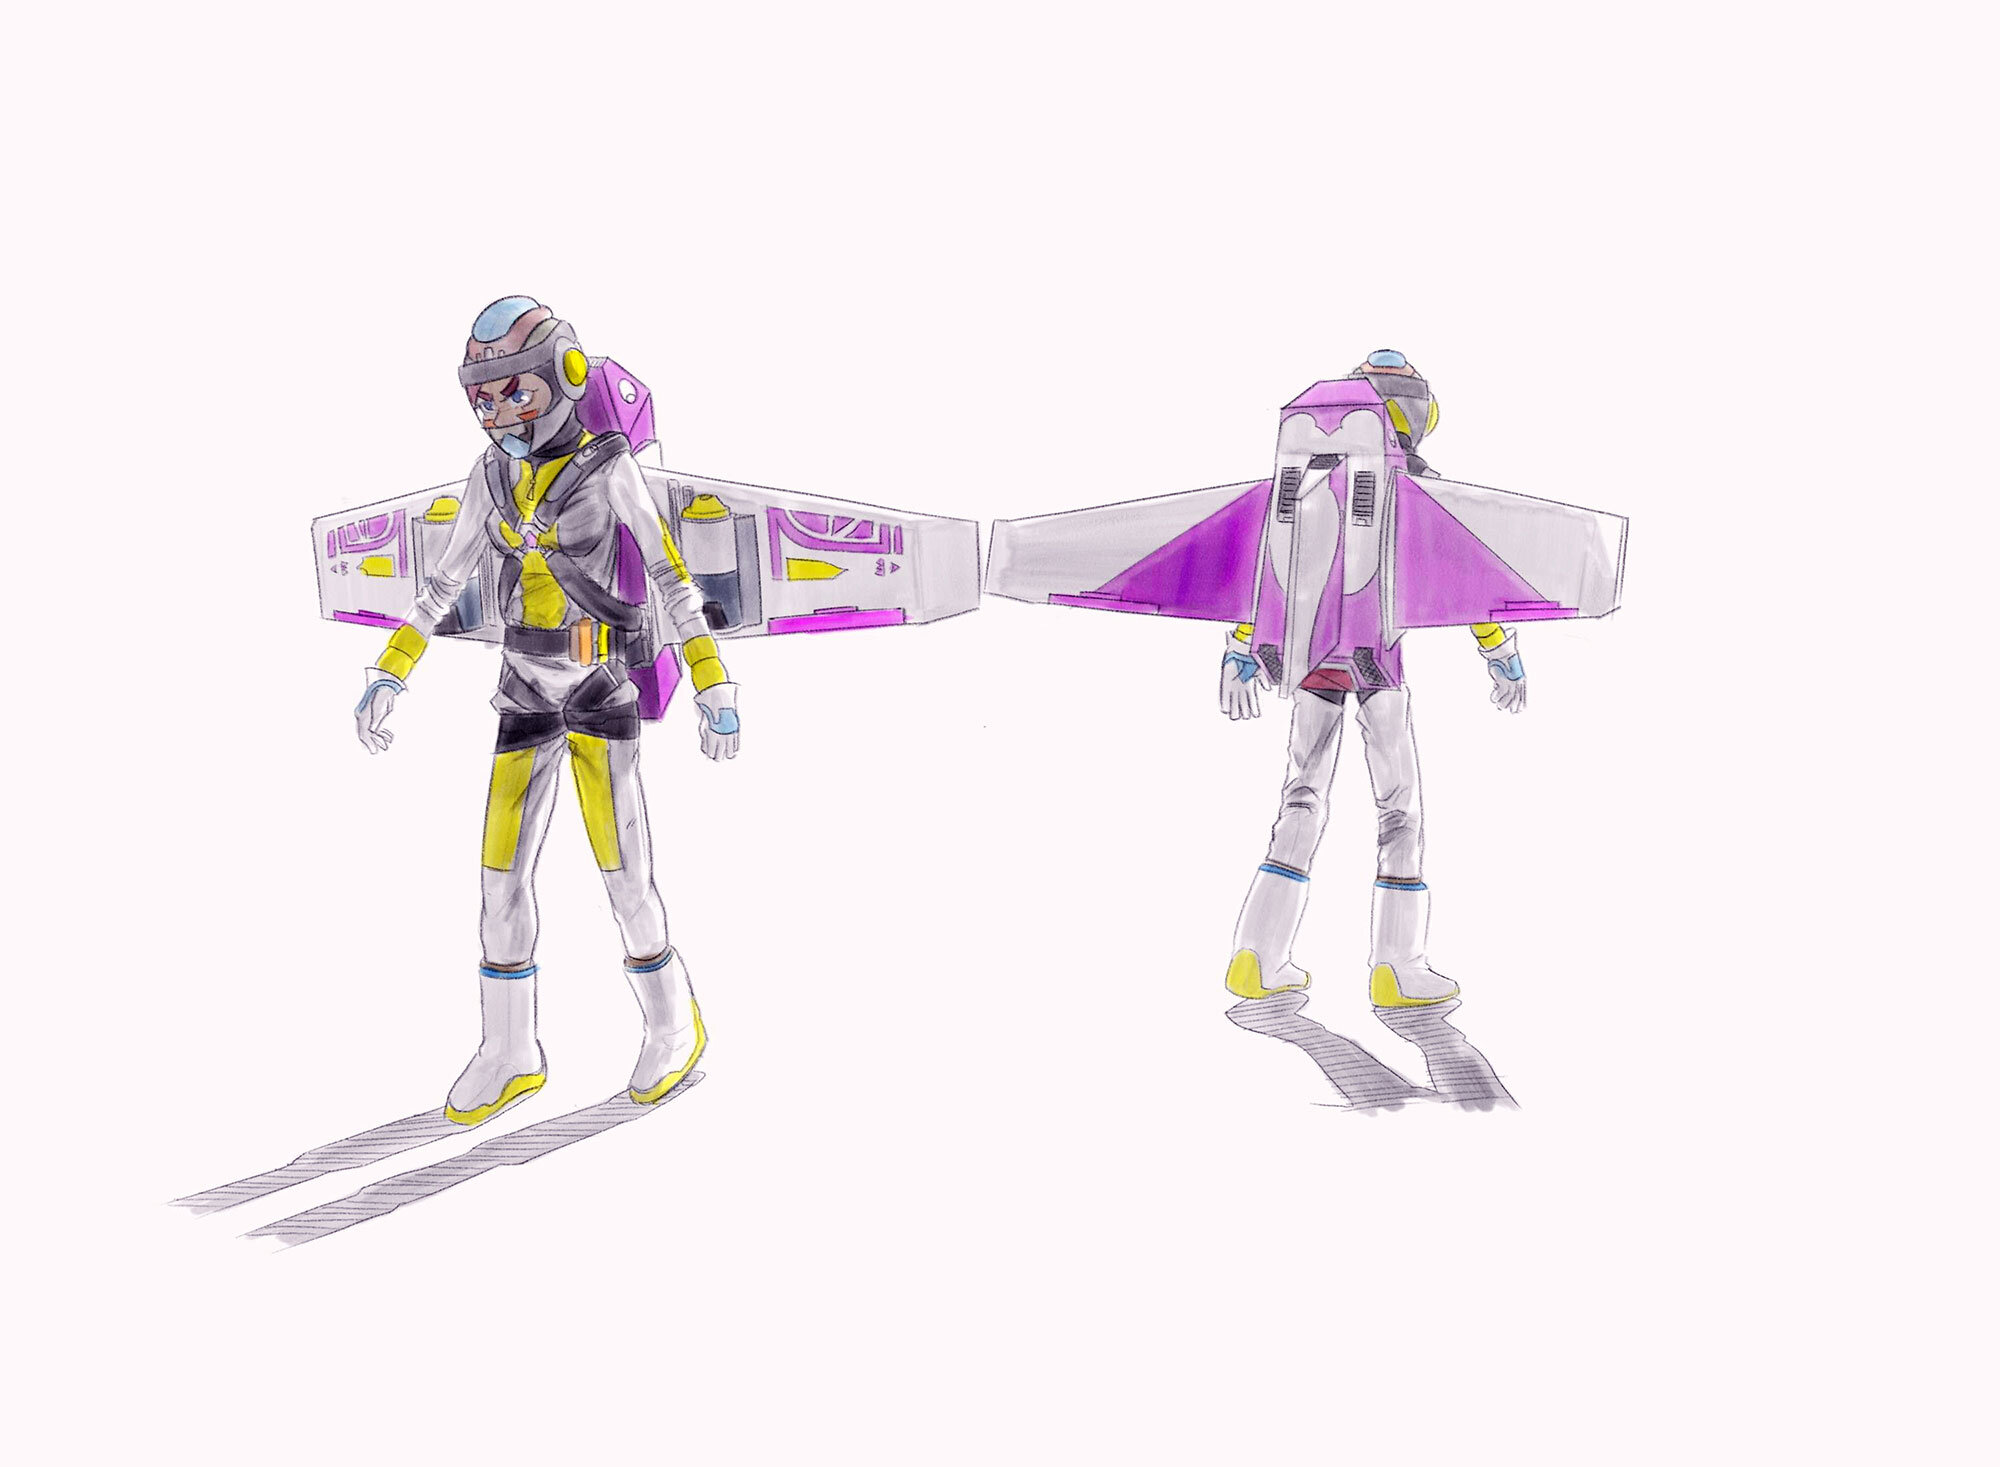 jetpack-anime-character-design-concept-art-scifi.jpg